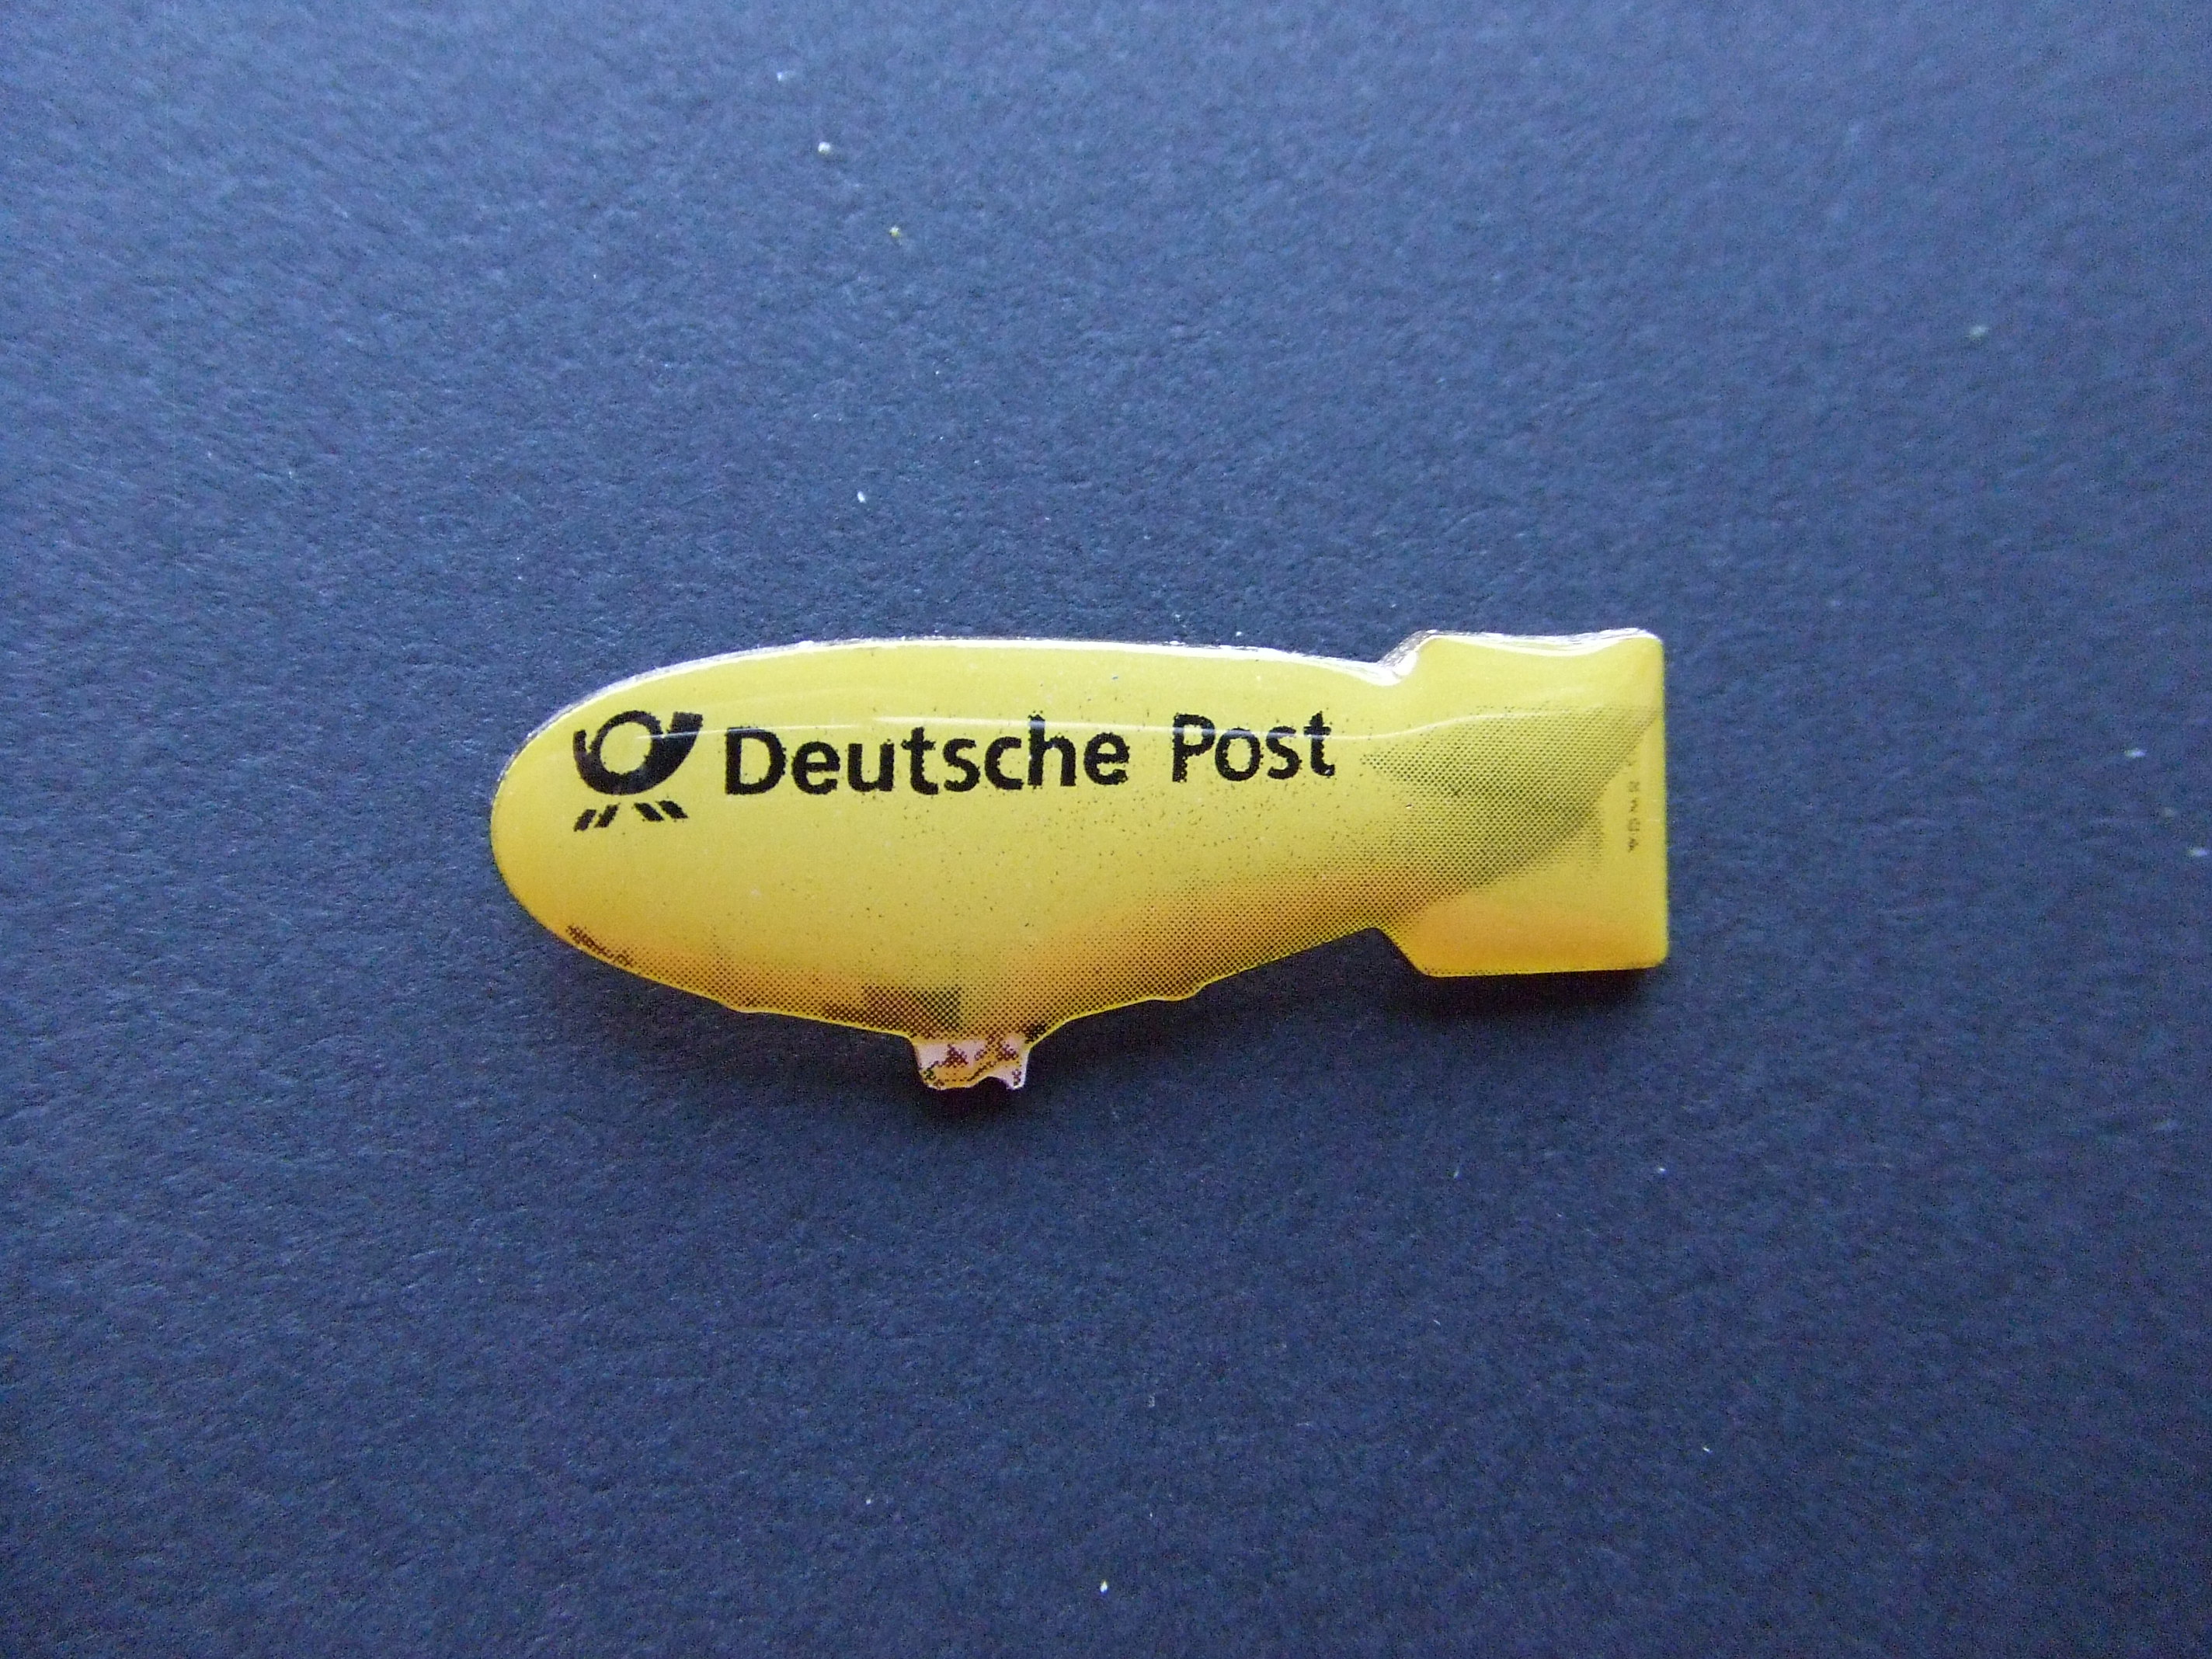 Zeppelin Deutsche post